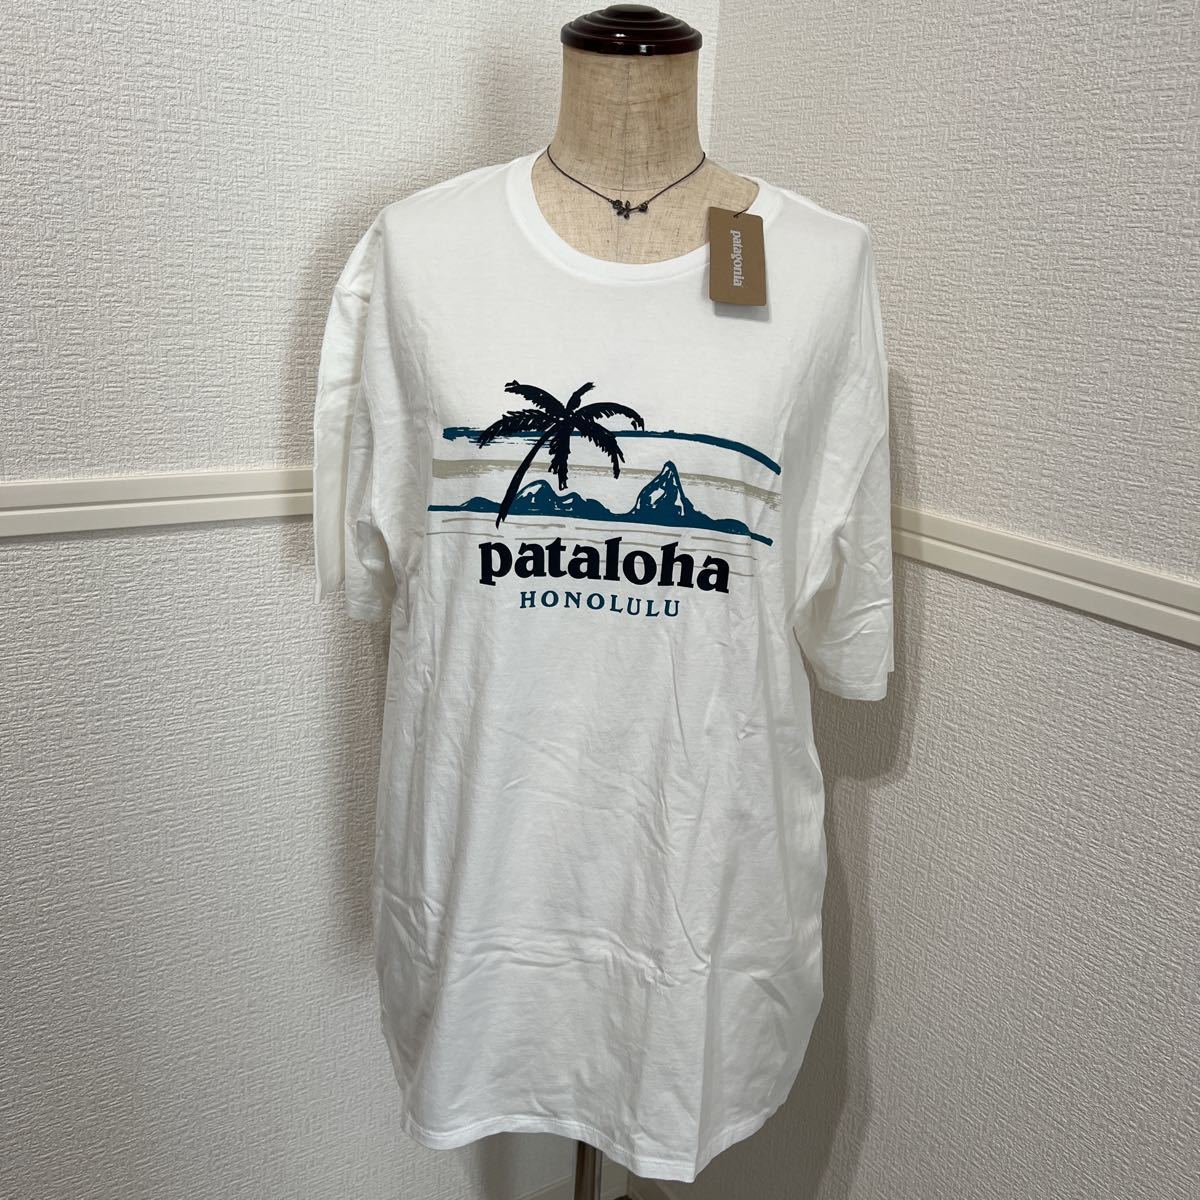 世界有名な Patagonia 新品 パタゴニア Honolulu ハワイ限定 半袖T